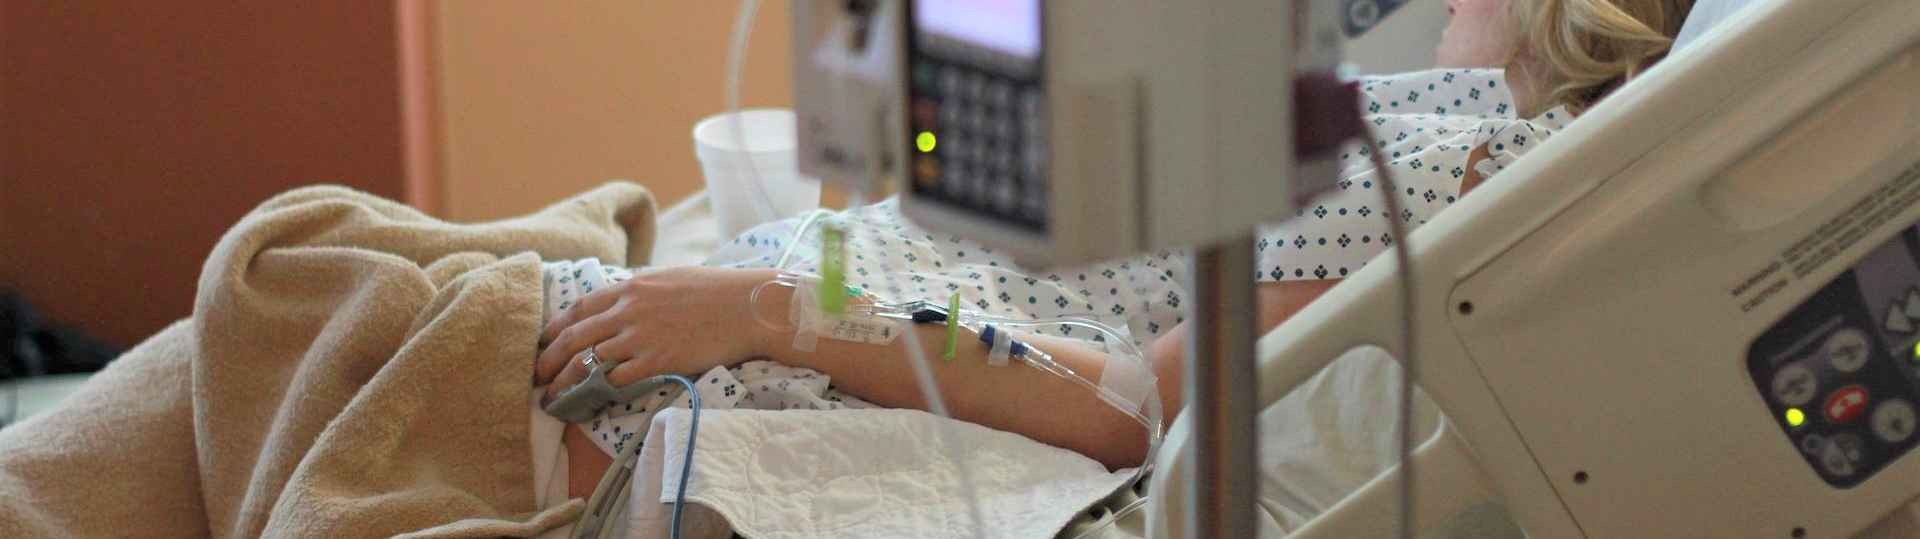 Las urgencias hospitalarias se saturan